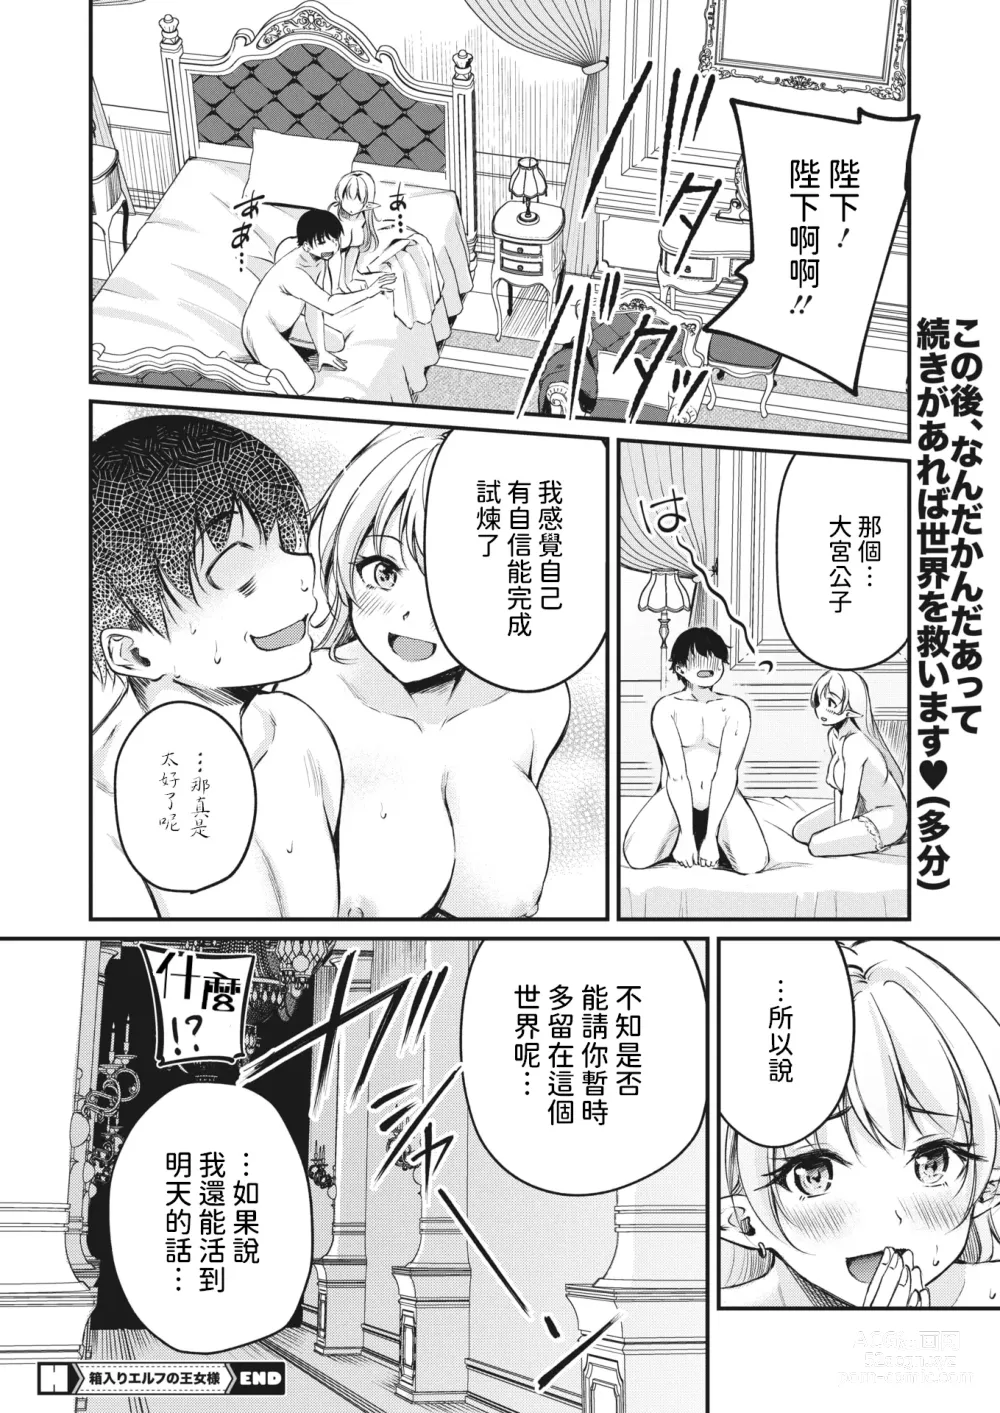 Page 26 of manga Hakoiri Elf no Oujo-sama